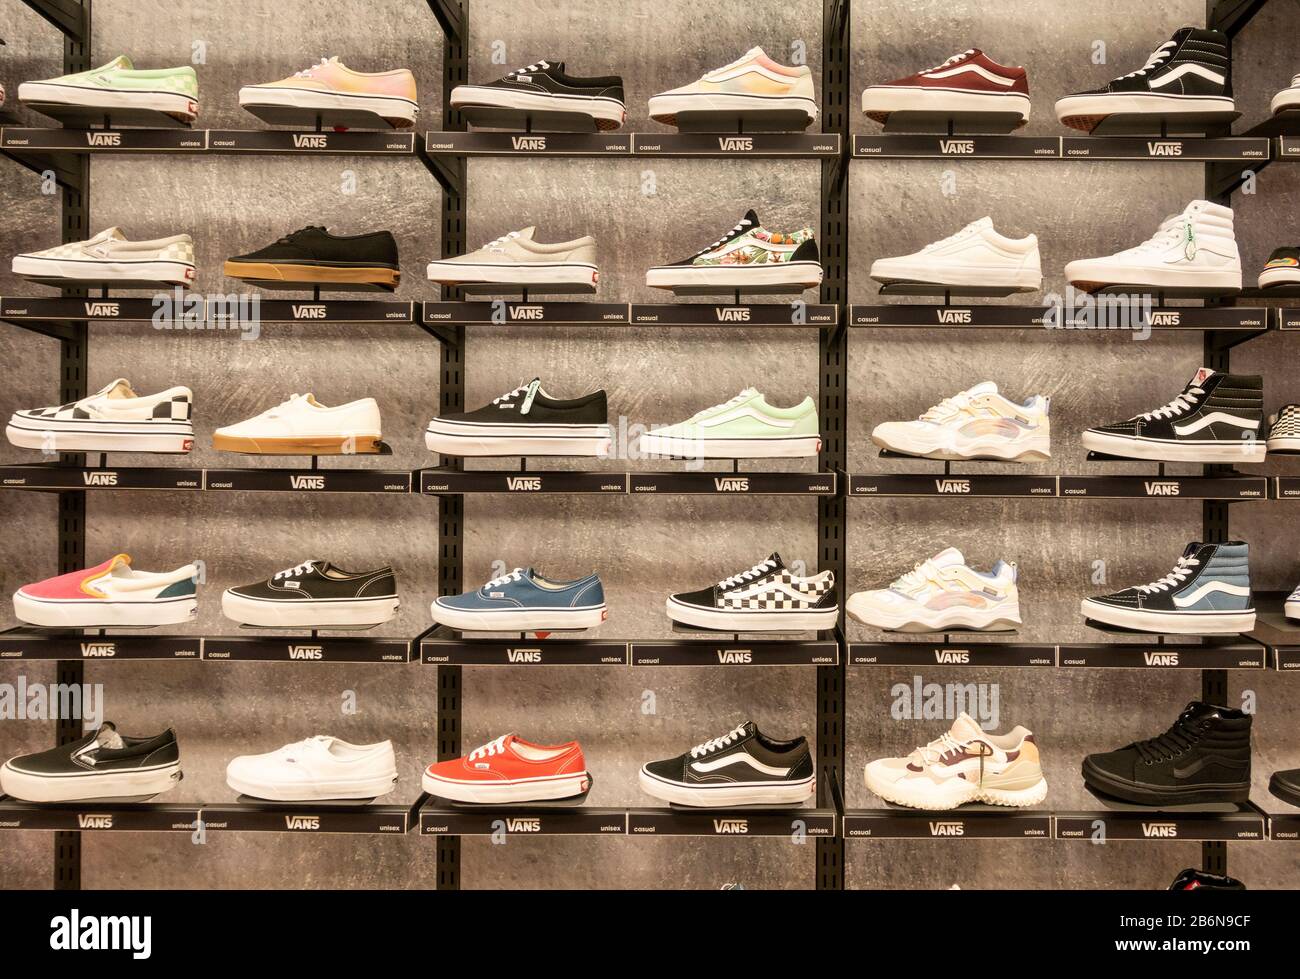 Vans footwear display in department store. Stock Photo